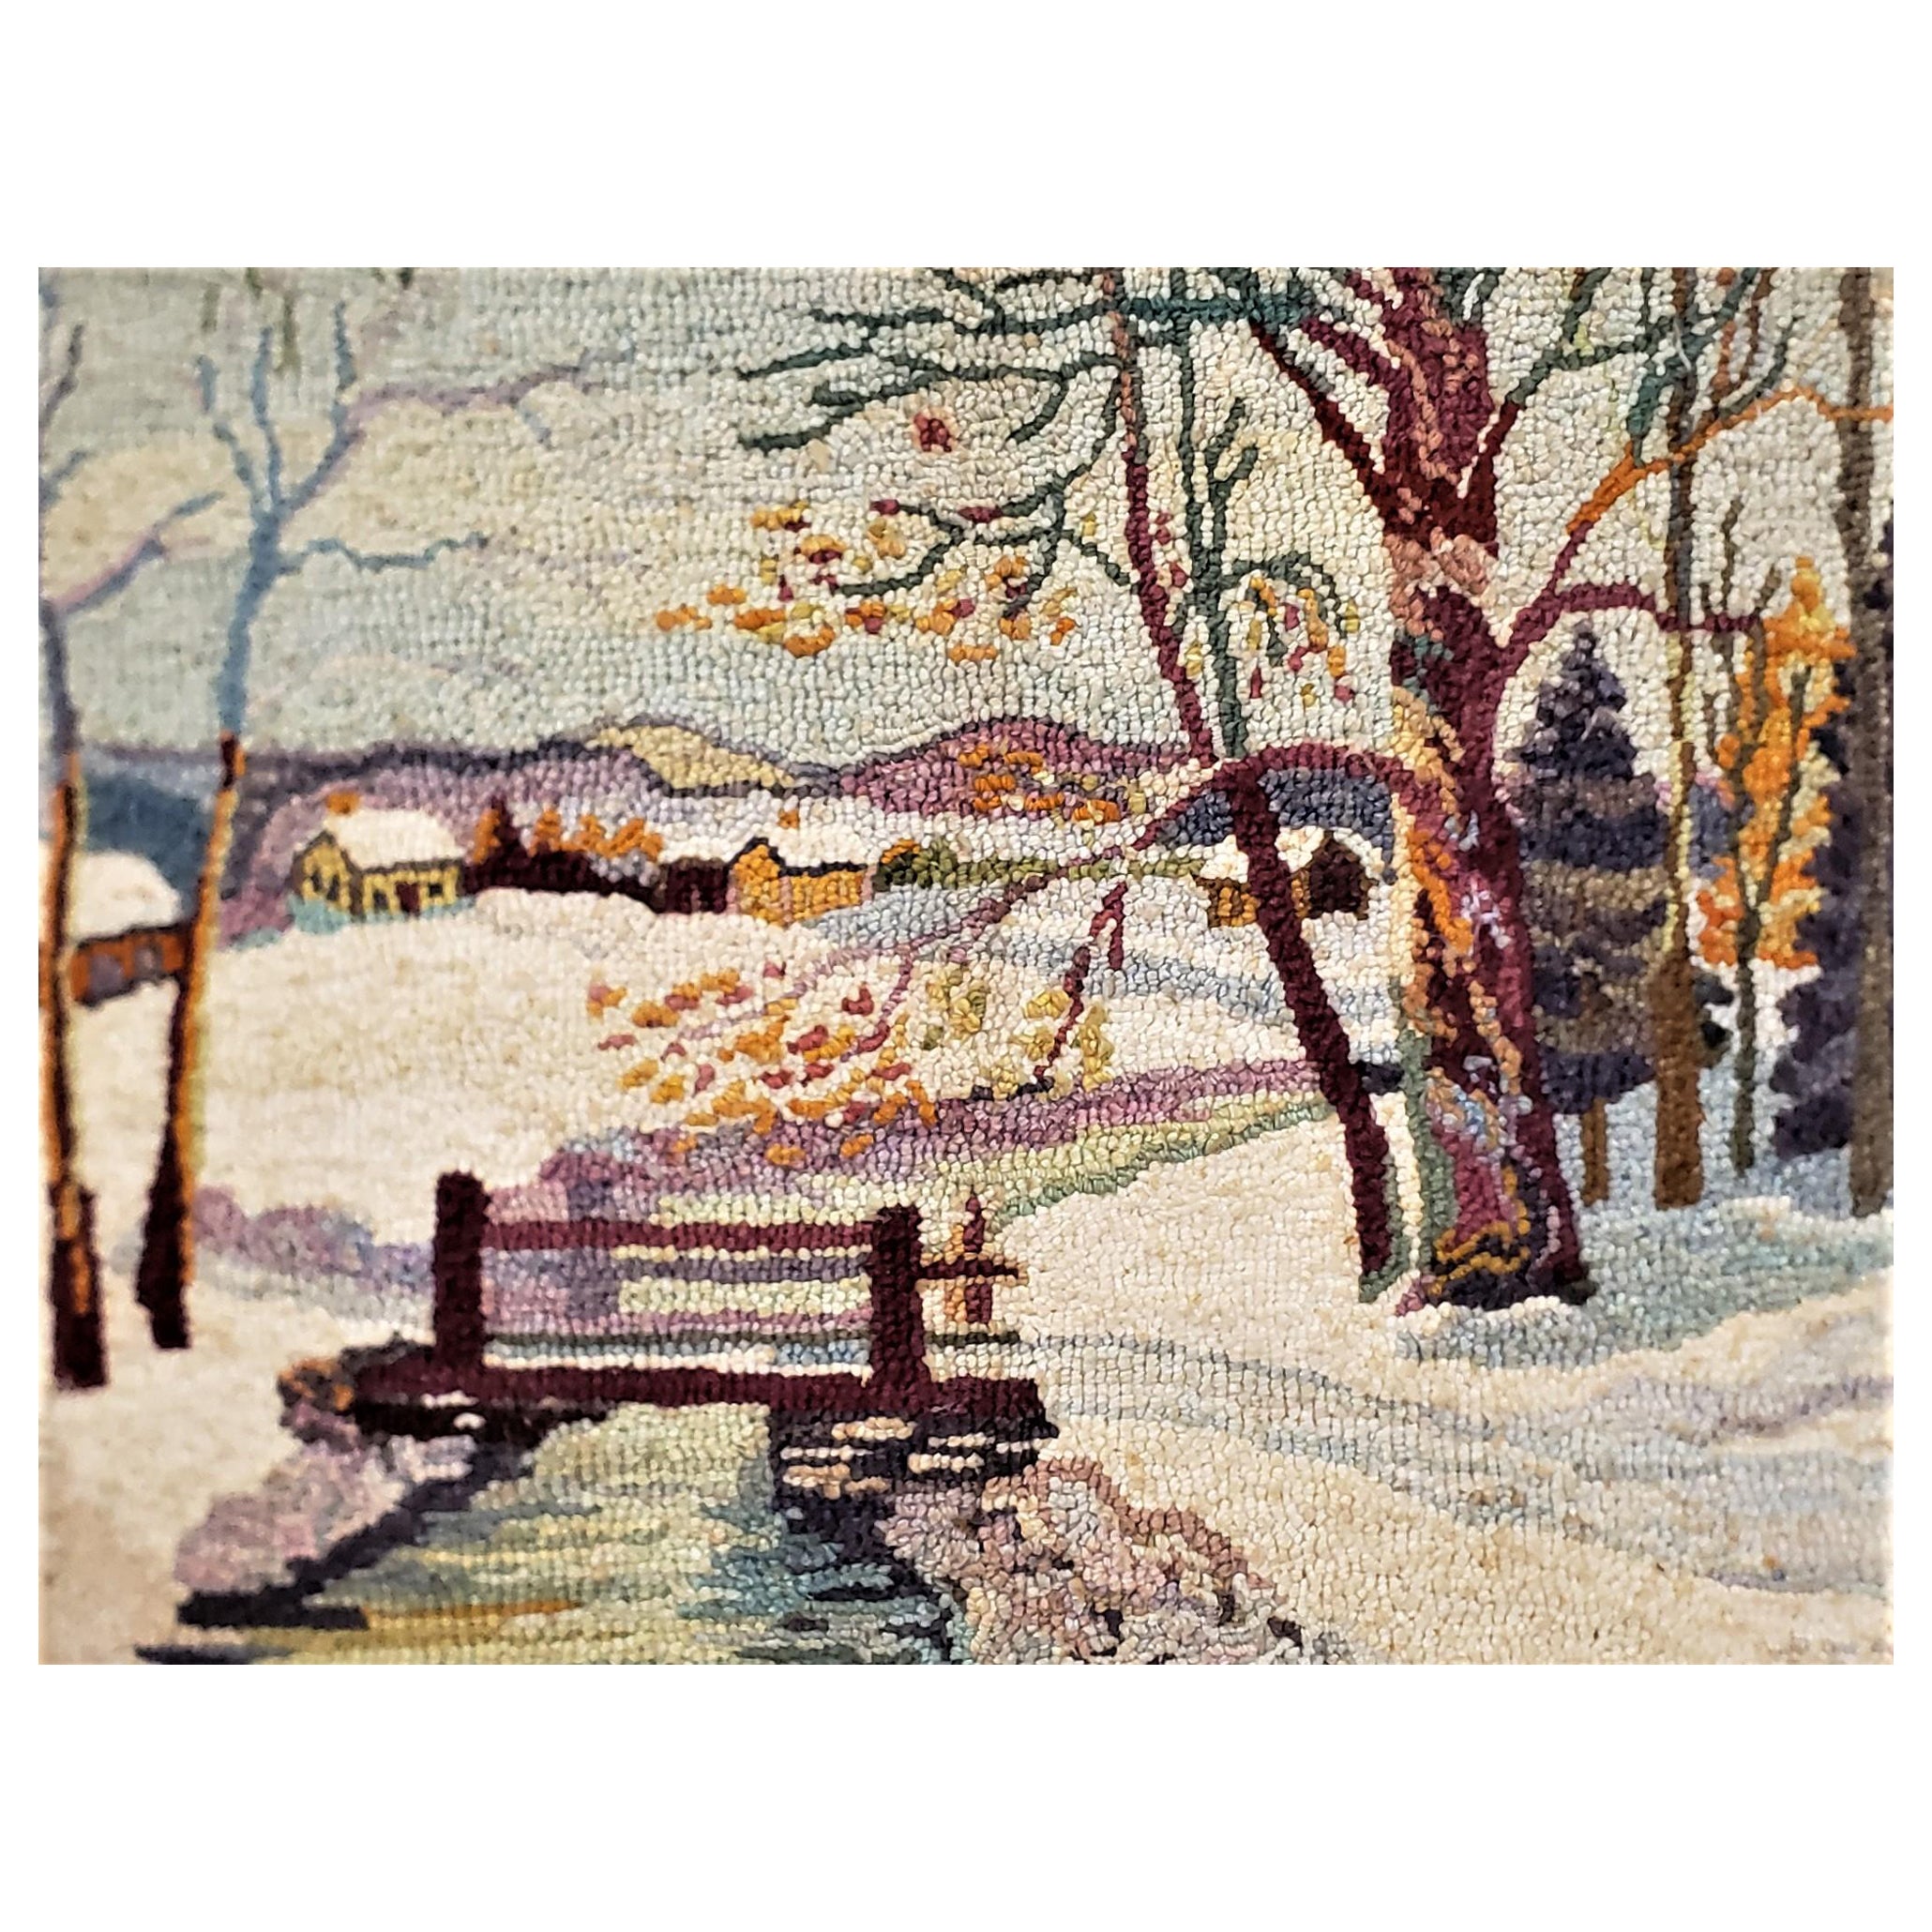 Tapis à capuche d'art populaire de George Edouard Tremblay, tapis ou tapisserie représentant une scène d'hiver